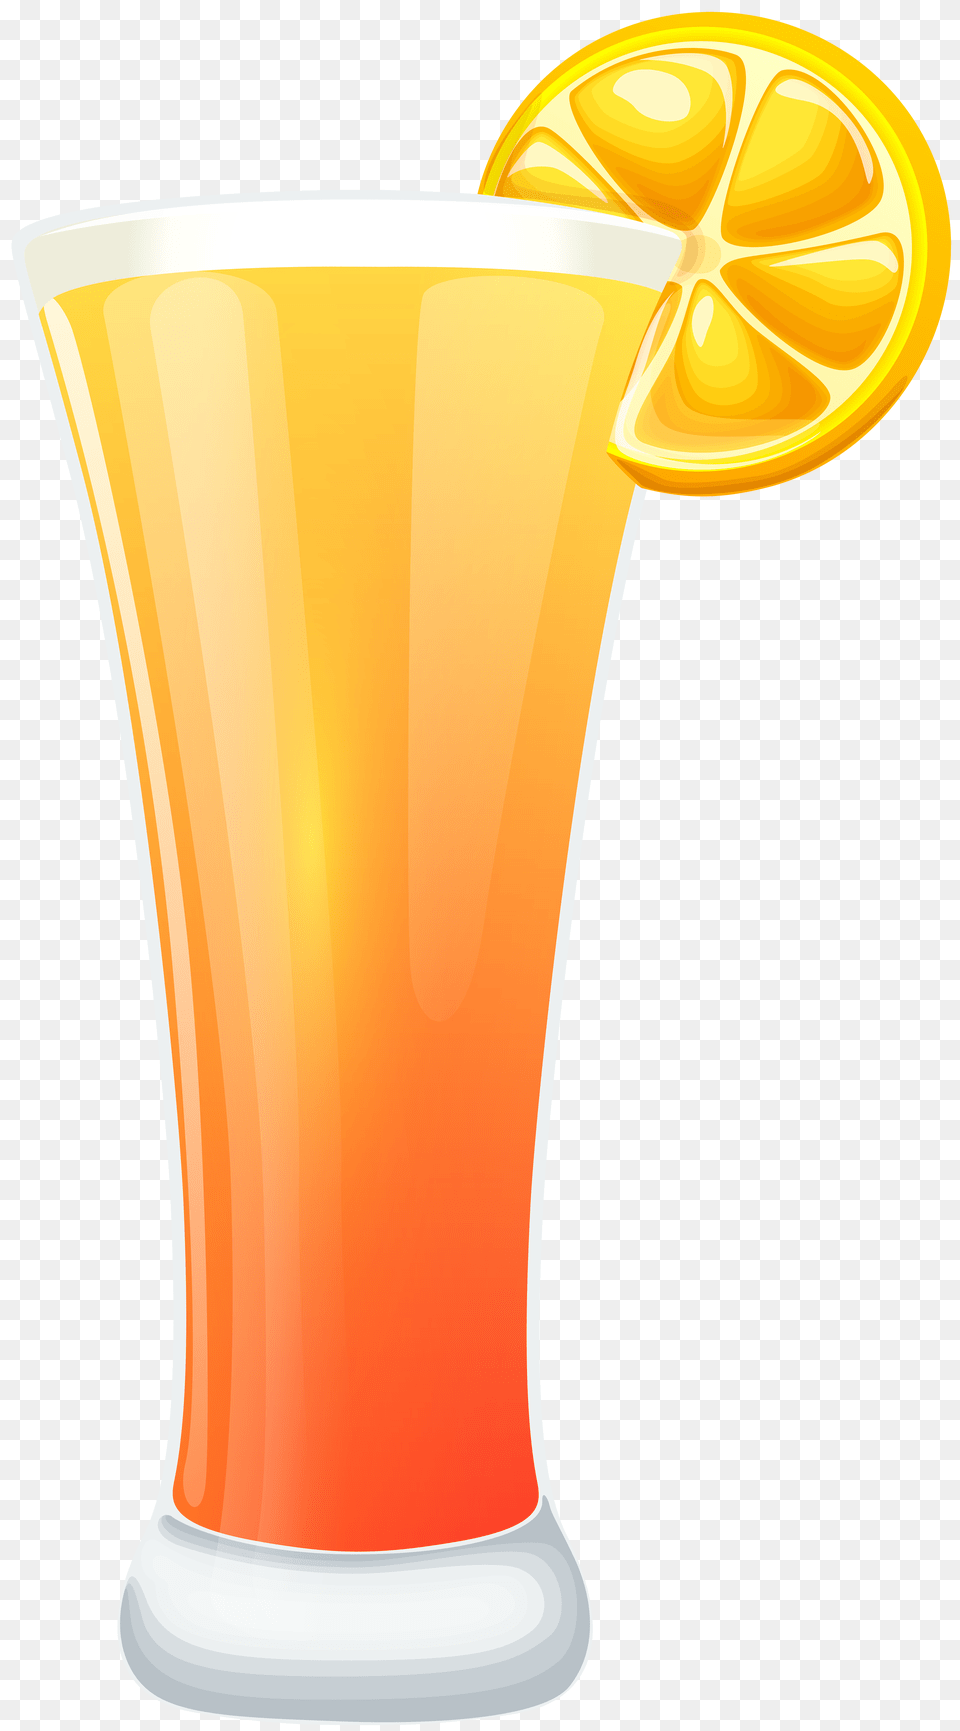 Orange Juice Clip, Beverage, Orange Juice, Bottle, Shaker Png Image